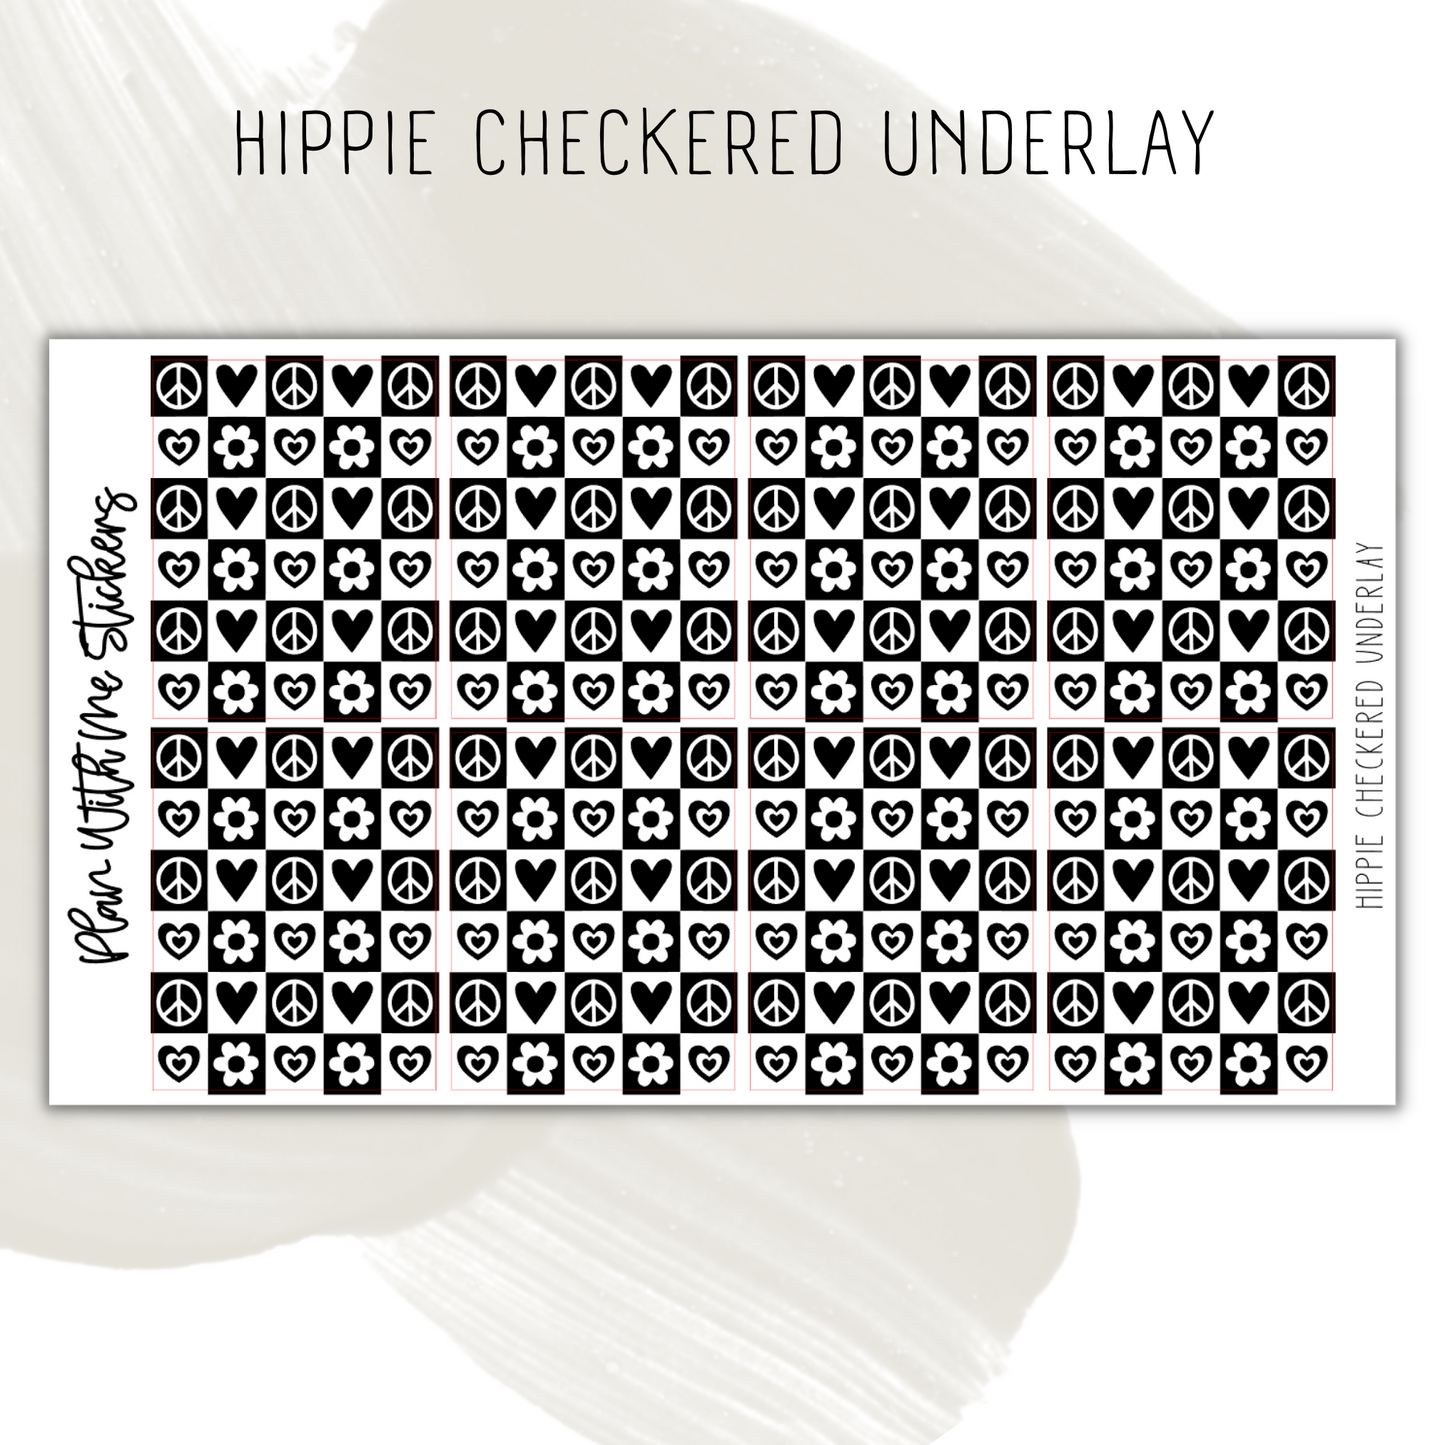 Hippie Checkered Underlay